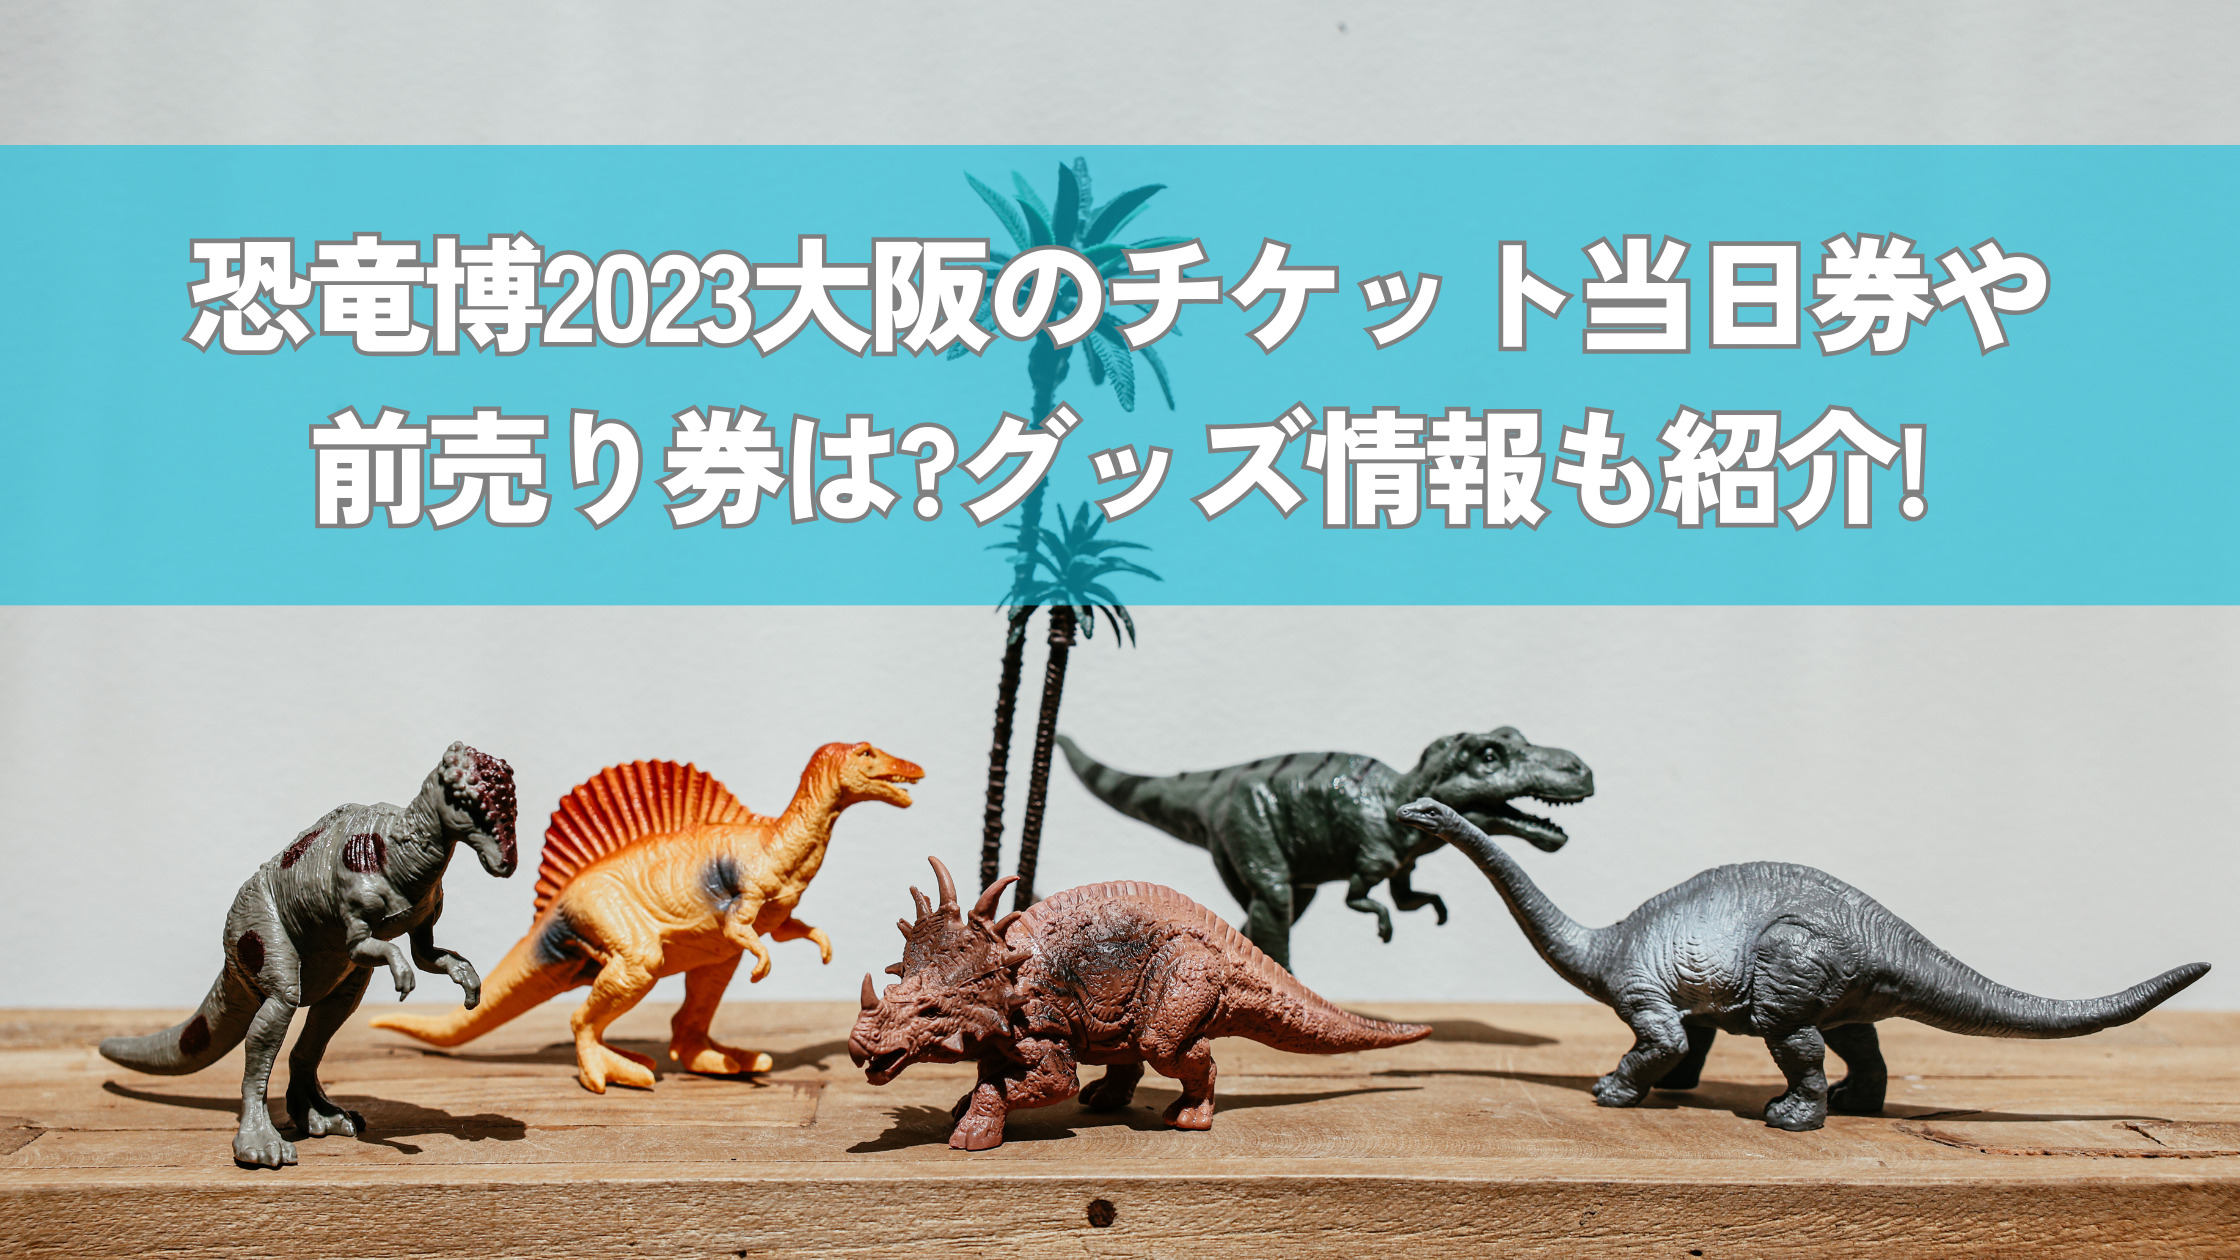 恐竜博2023 招待券2枚 期間限定券 - 美術館